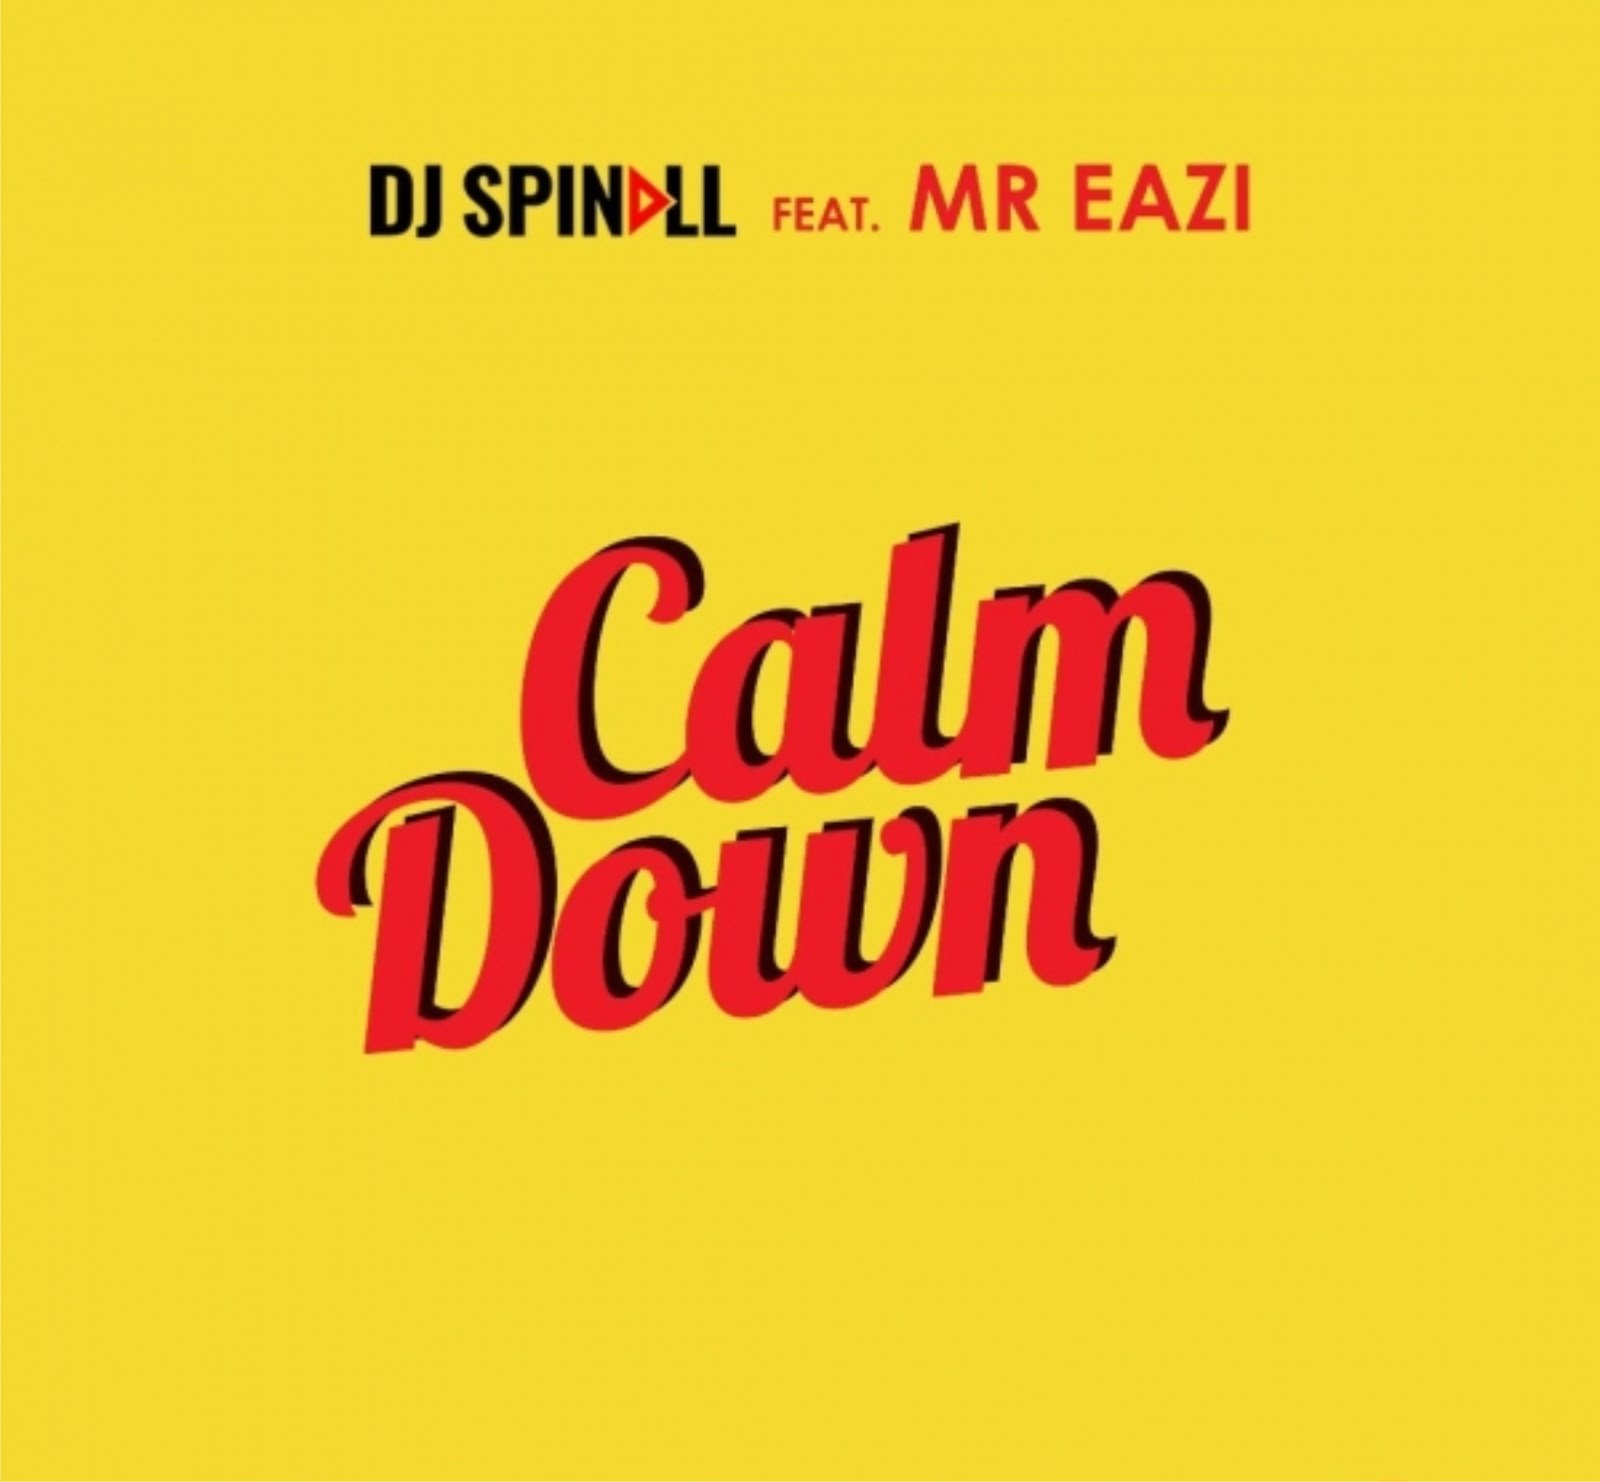 Spin feat. Mr Eazi. Calm down. Calm down песня. Dispi.